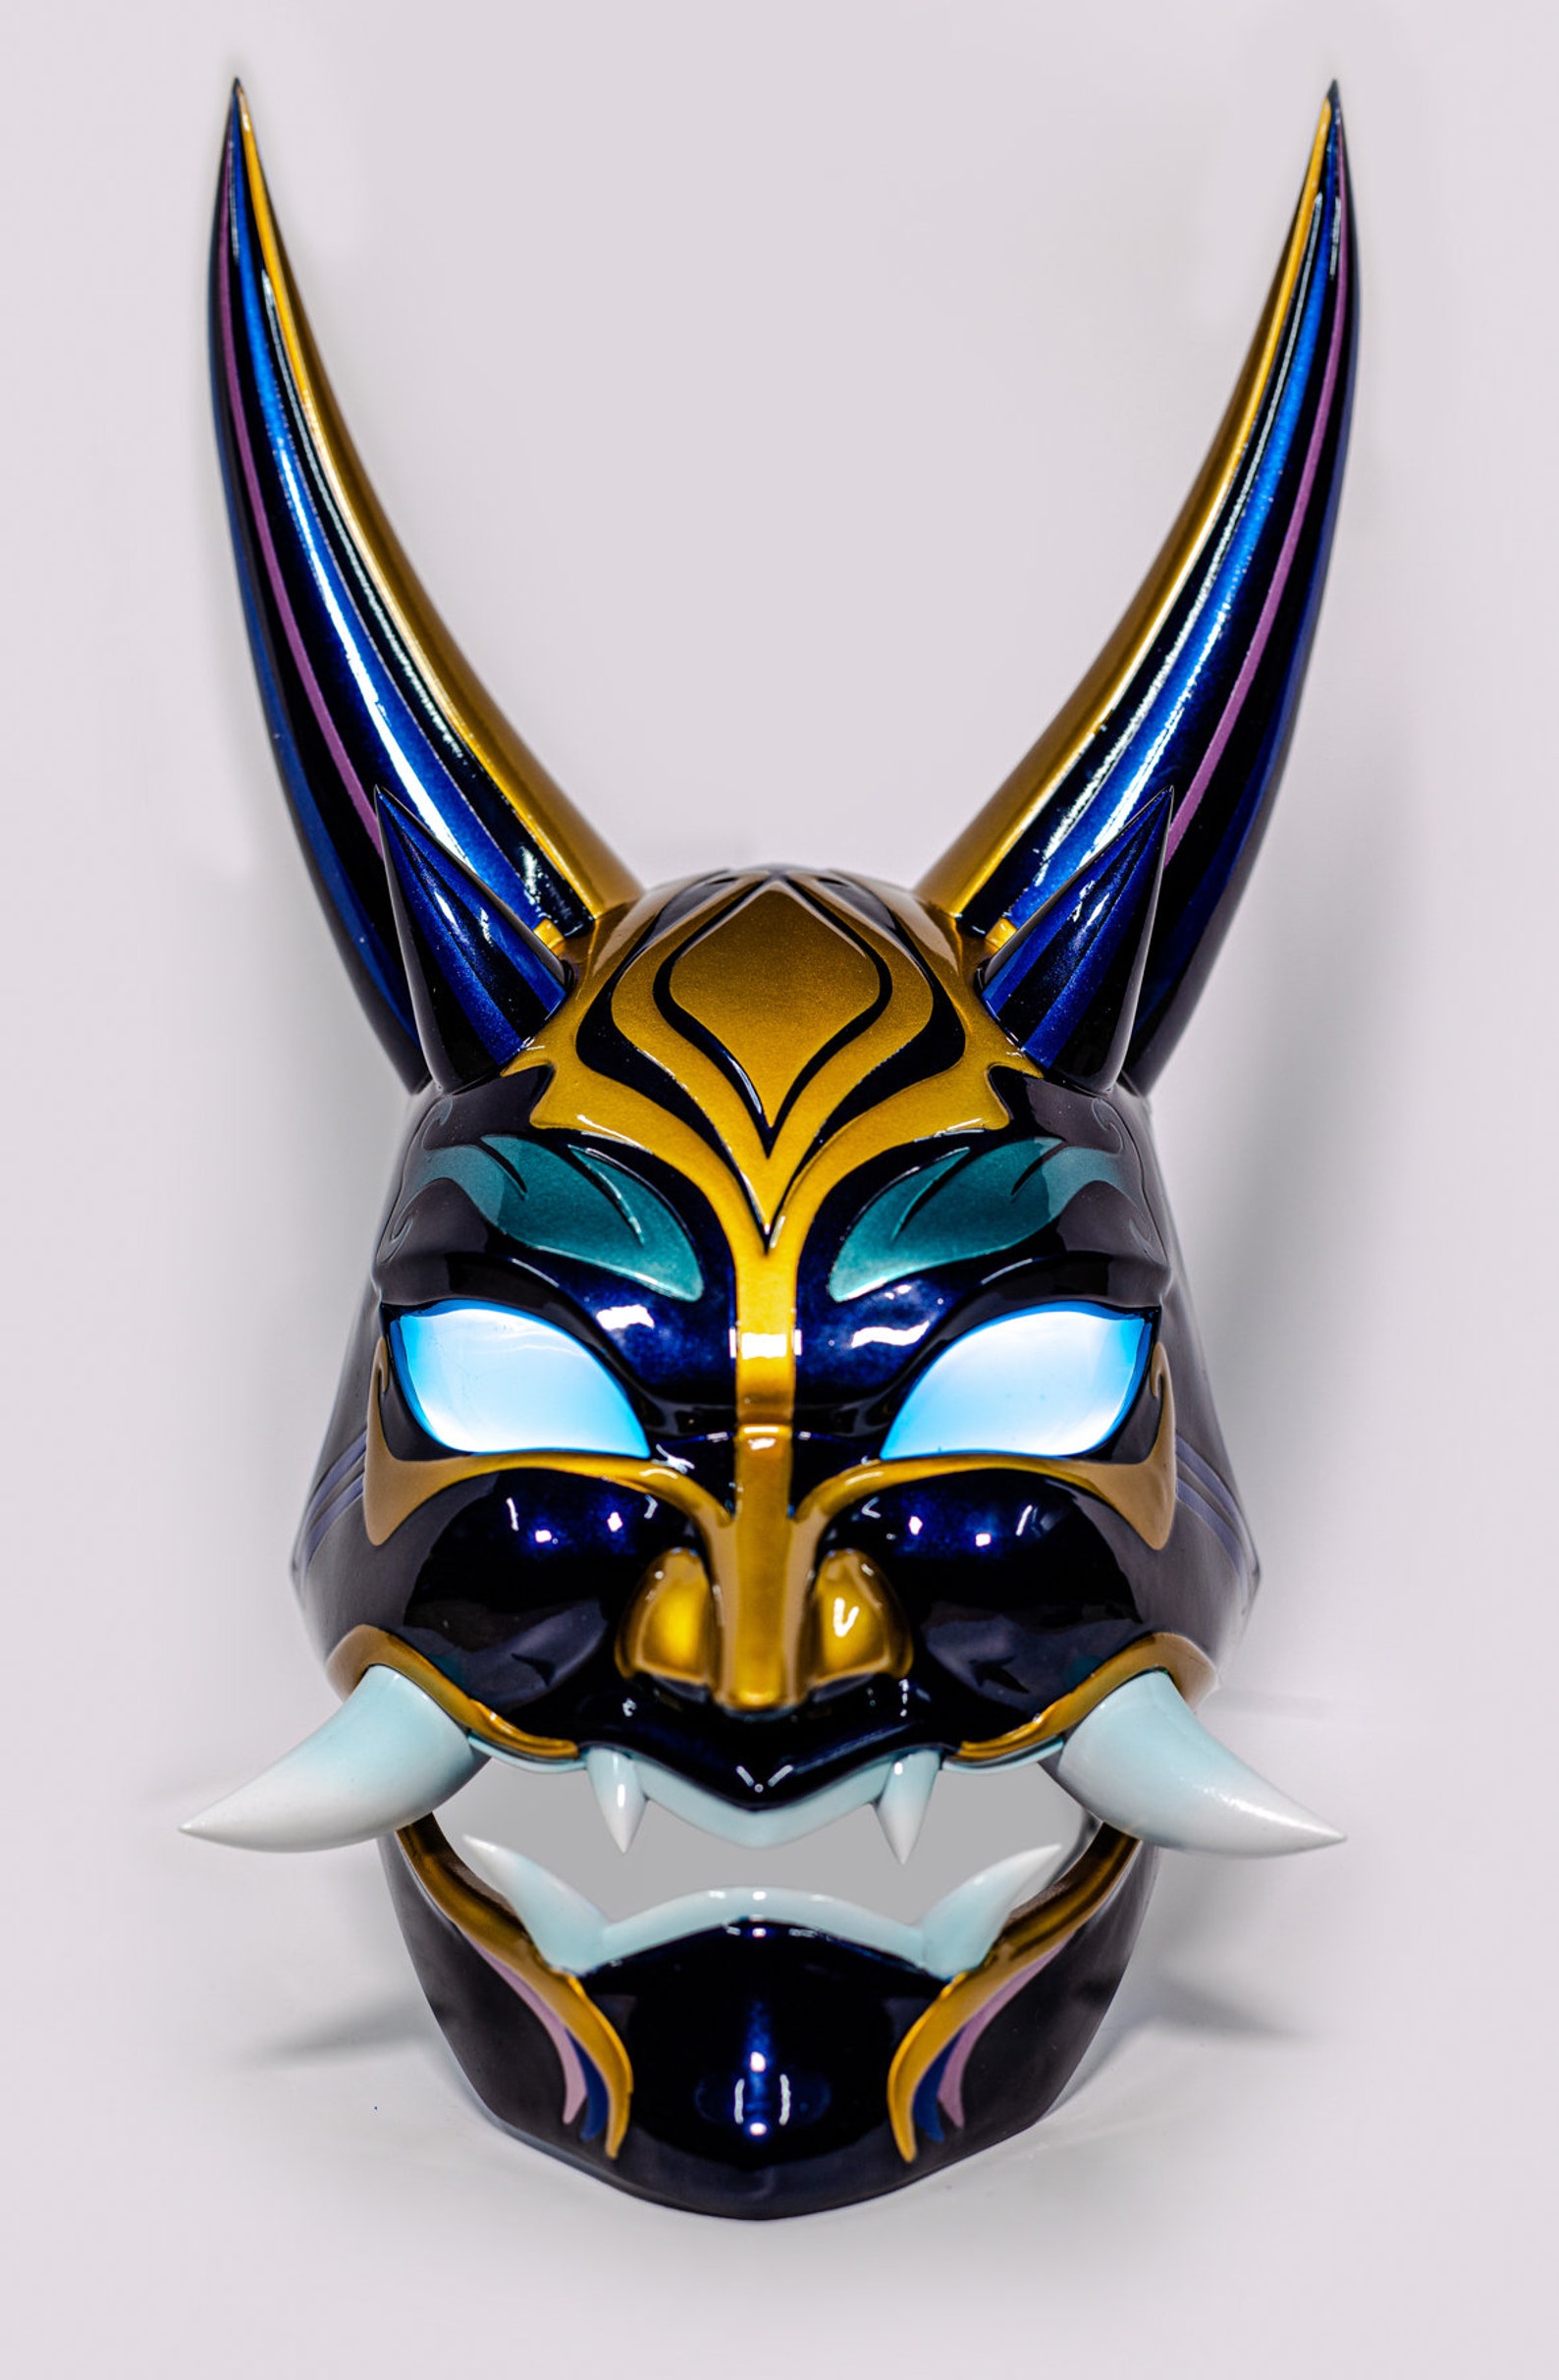 Xiao Mask. Genshin Impact. RGB LED Eyes. Magnet or Elastic | Etsy